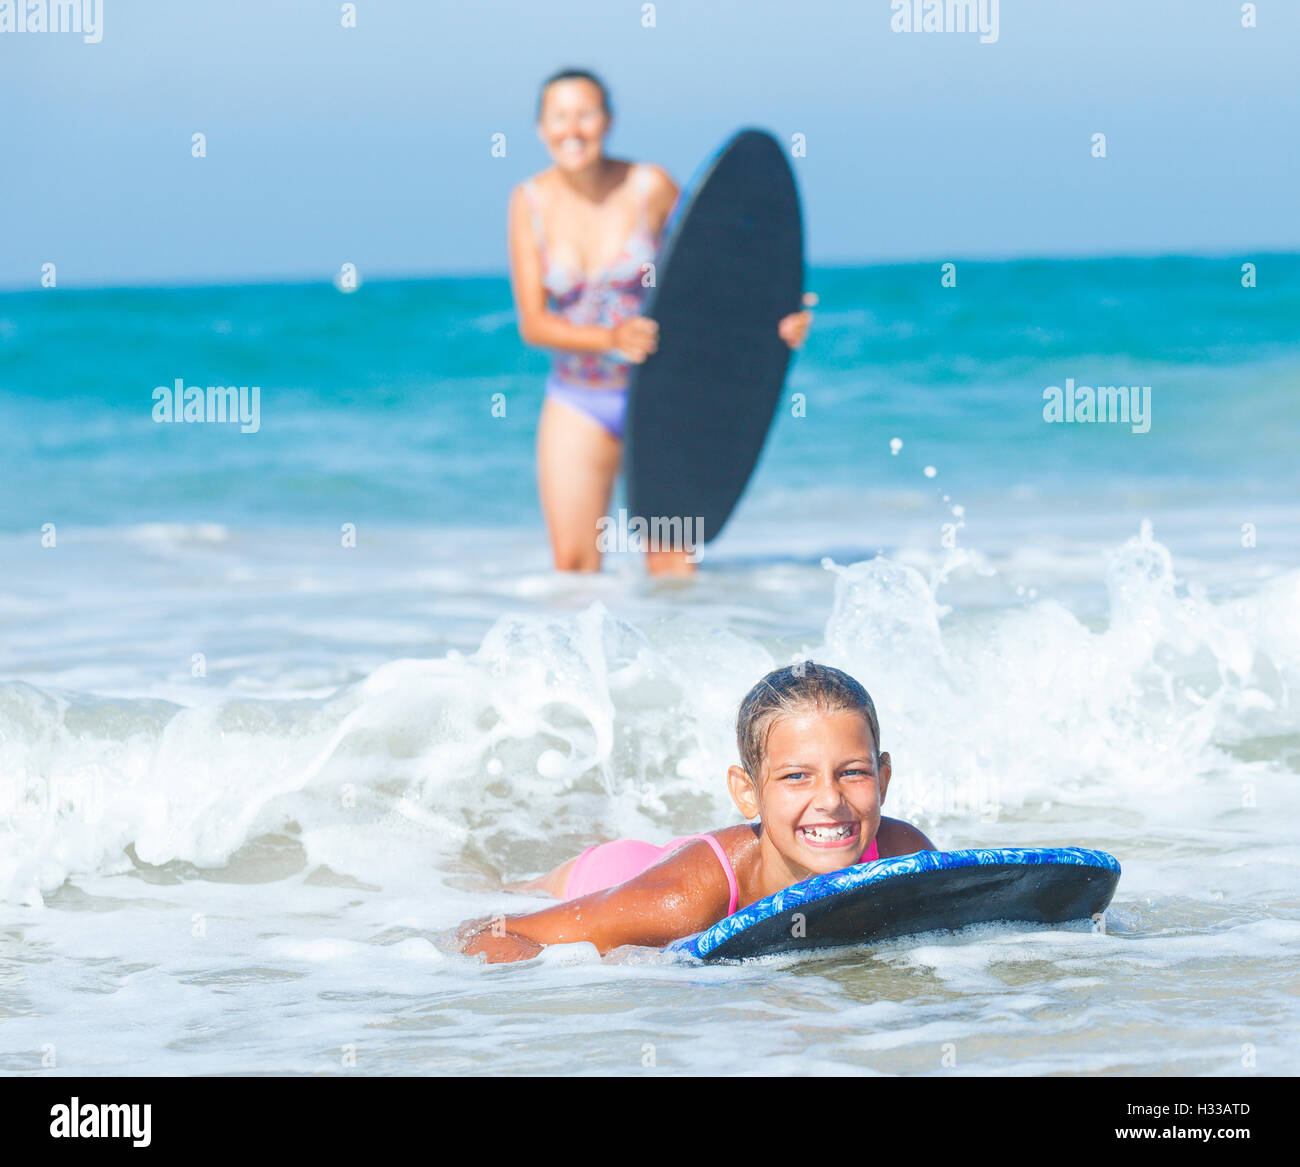 Vacanze estive - surfer girl. Foto Stock